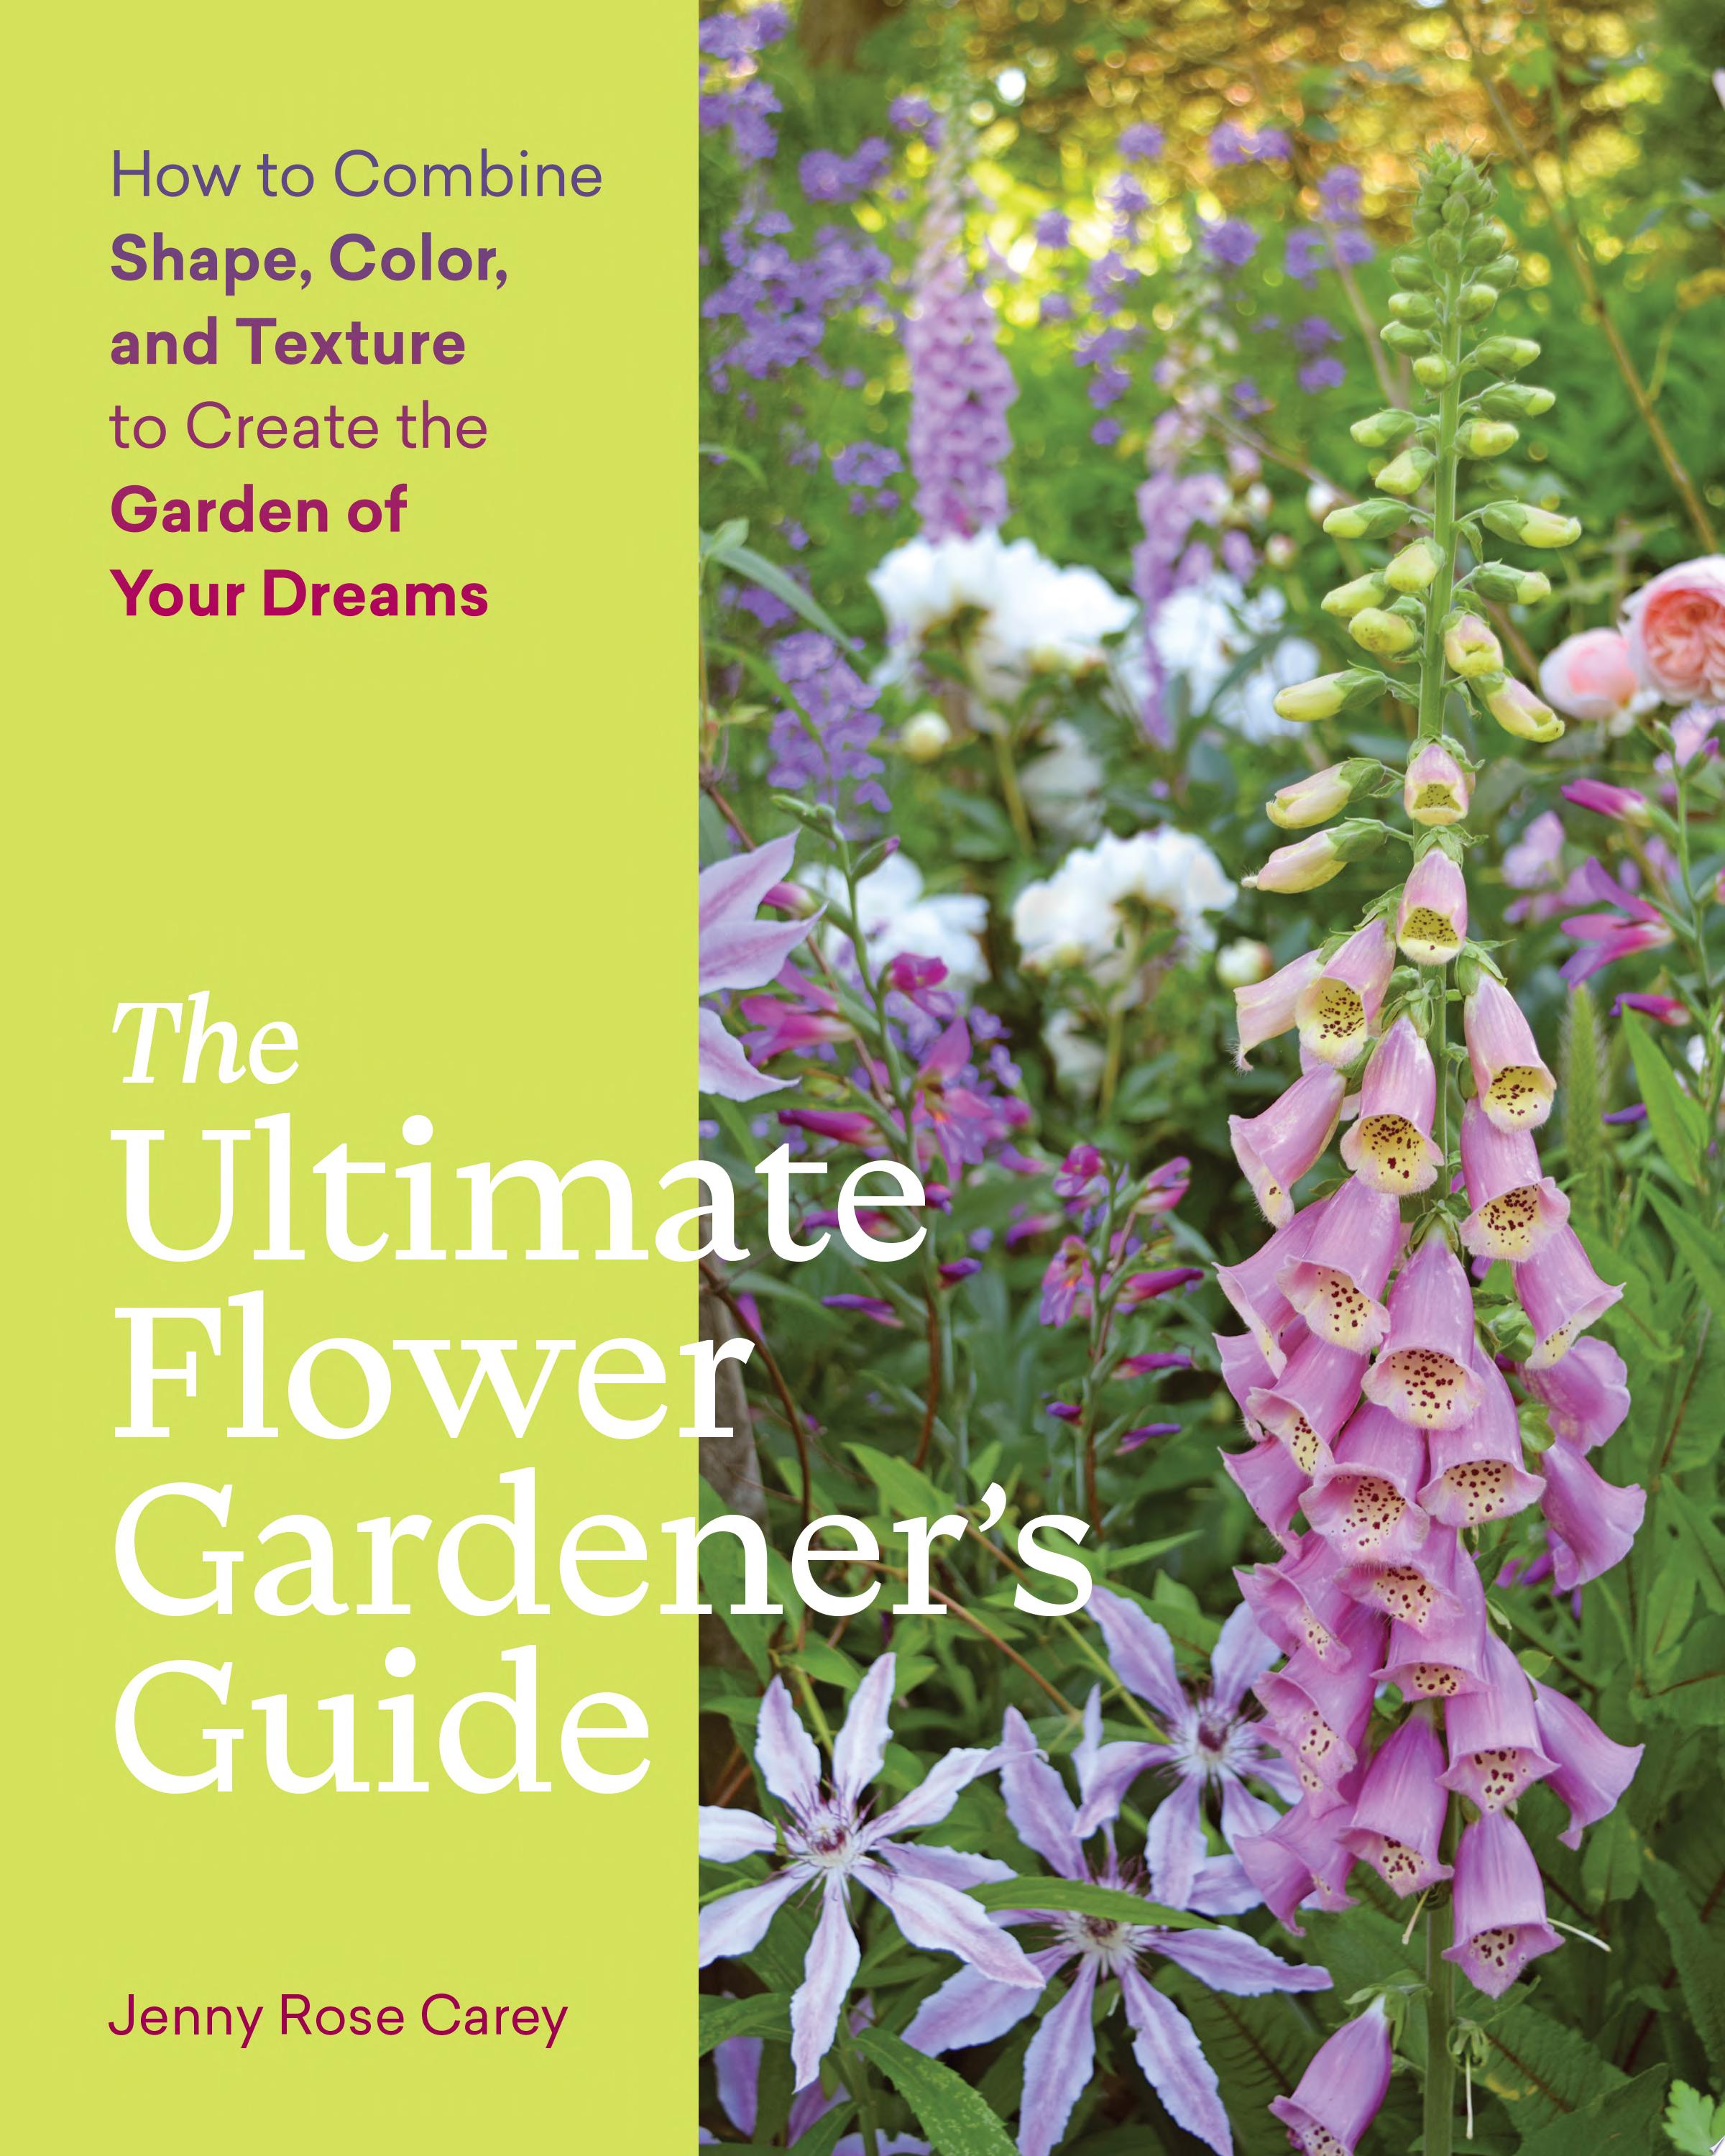 Image for "The Ultimate Flower Gardener’s Guide"